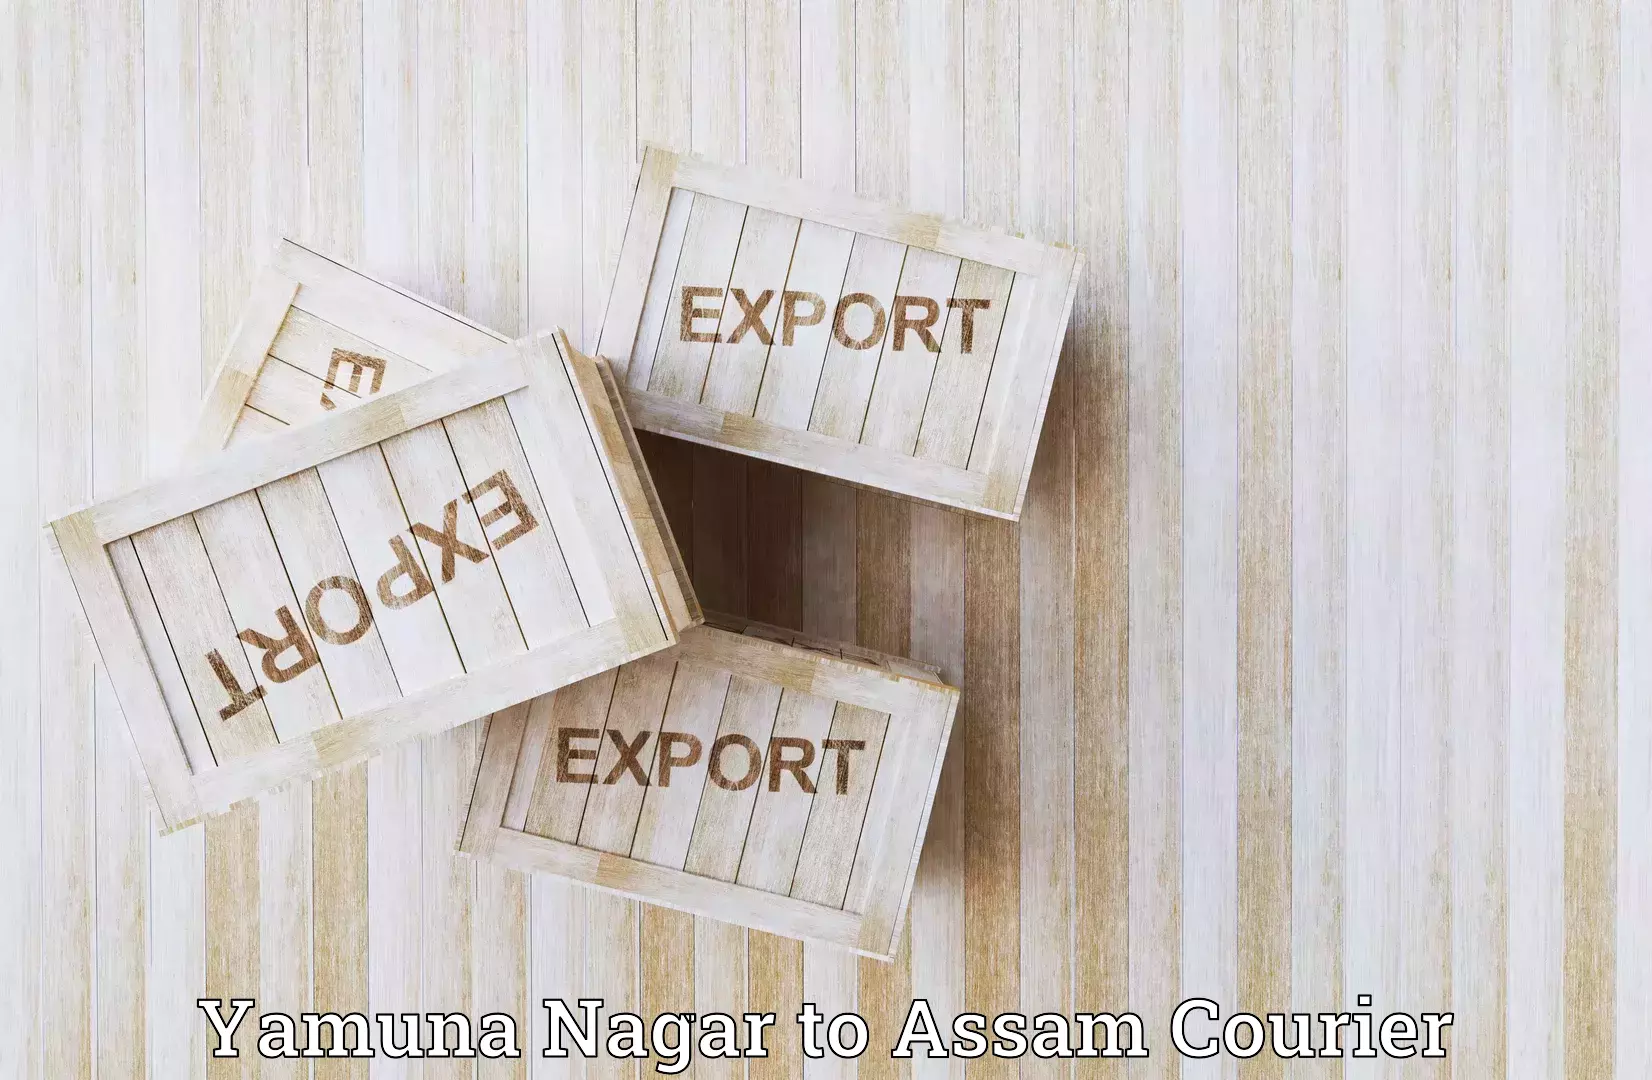 State-of-the-art courier technology Yamuna Nagar to Amoni